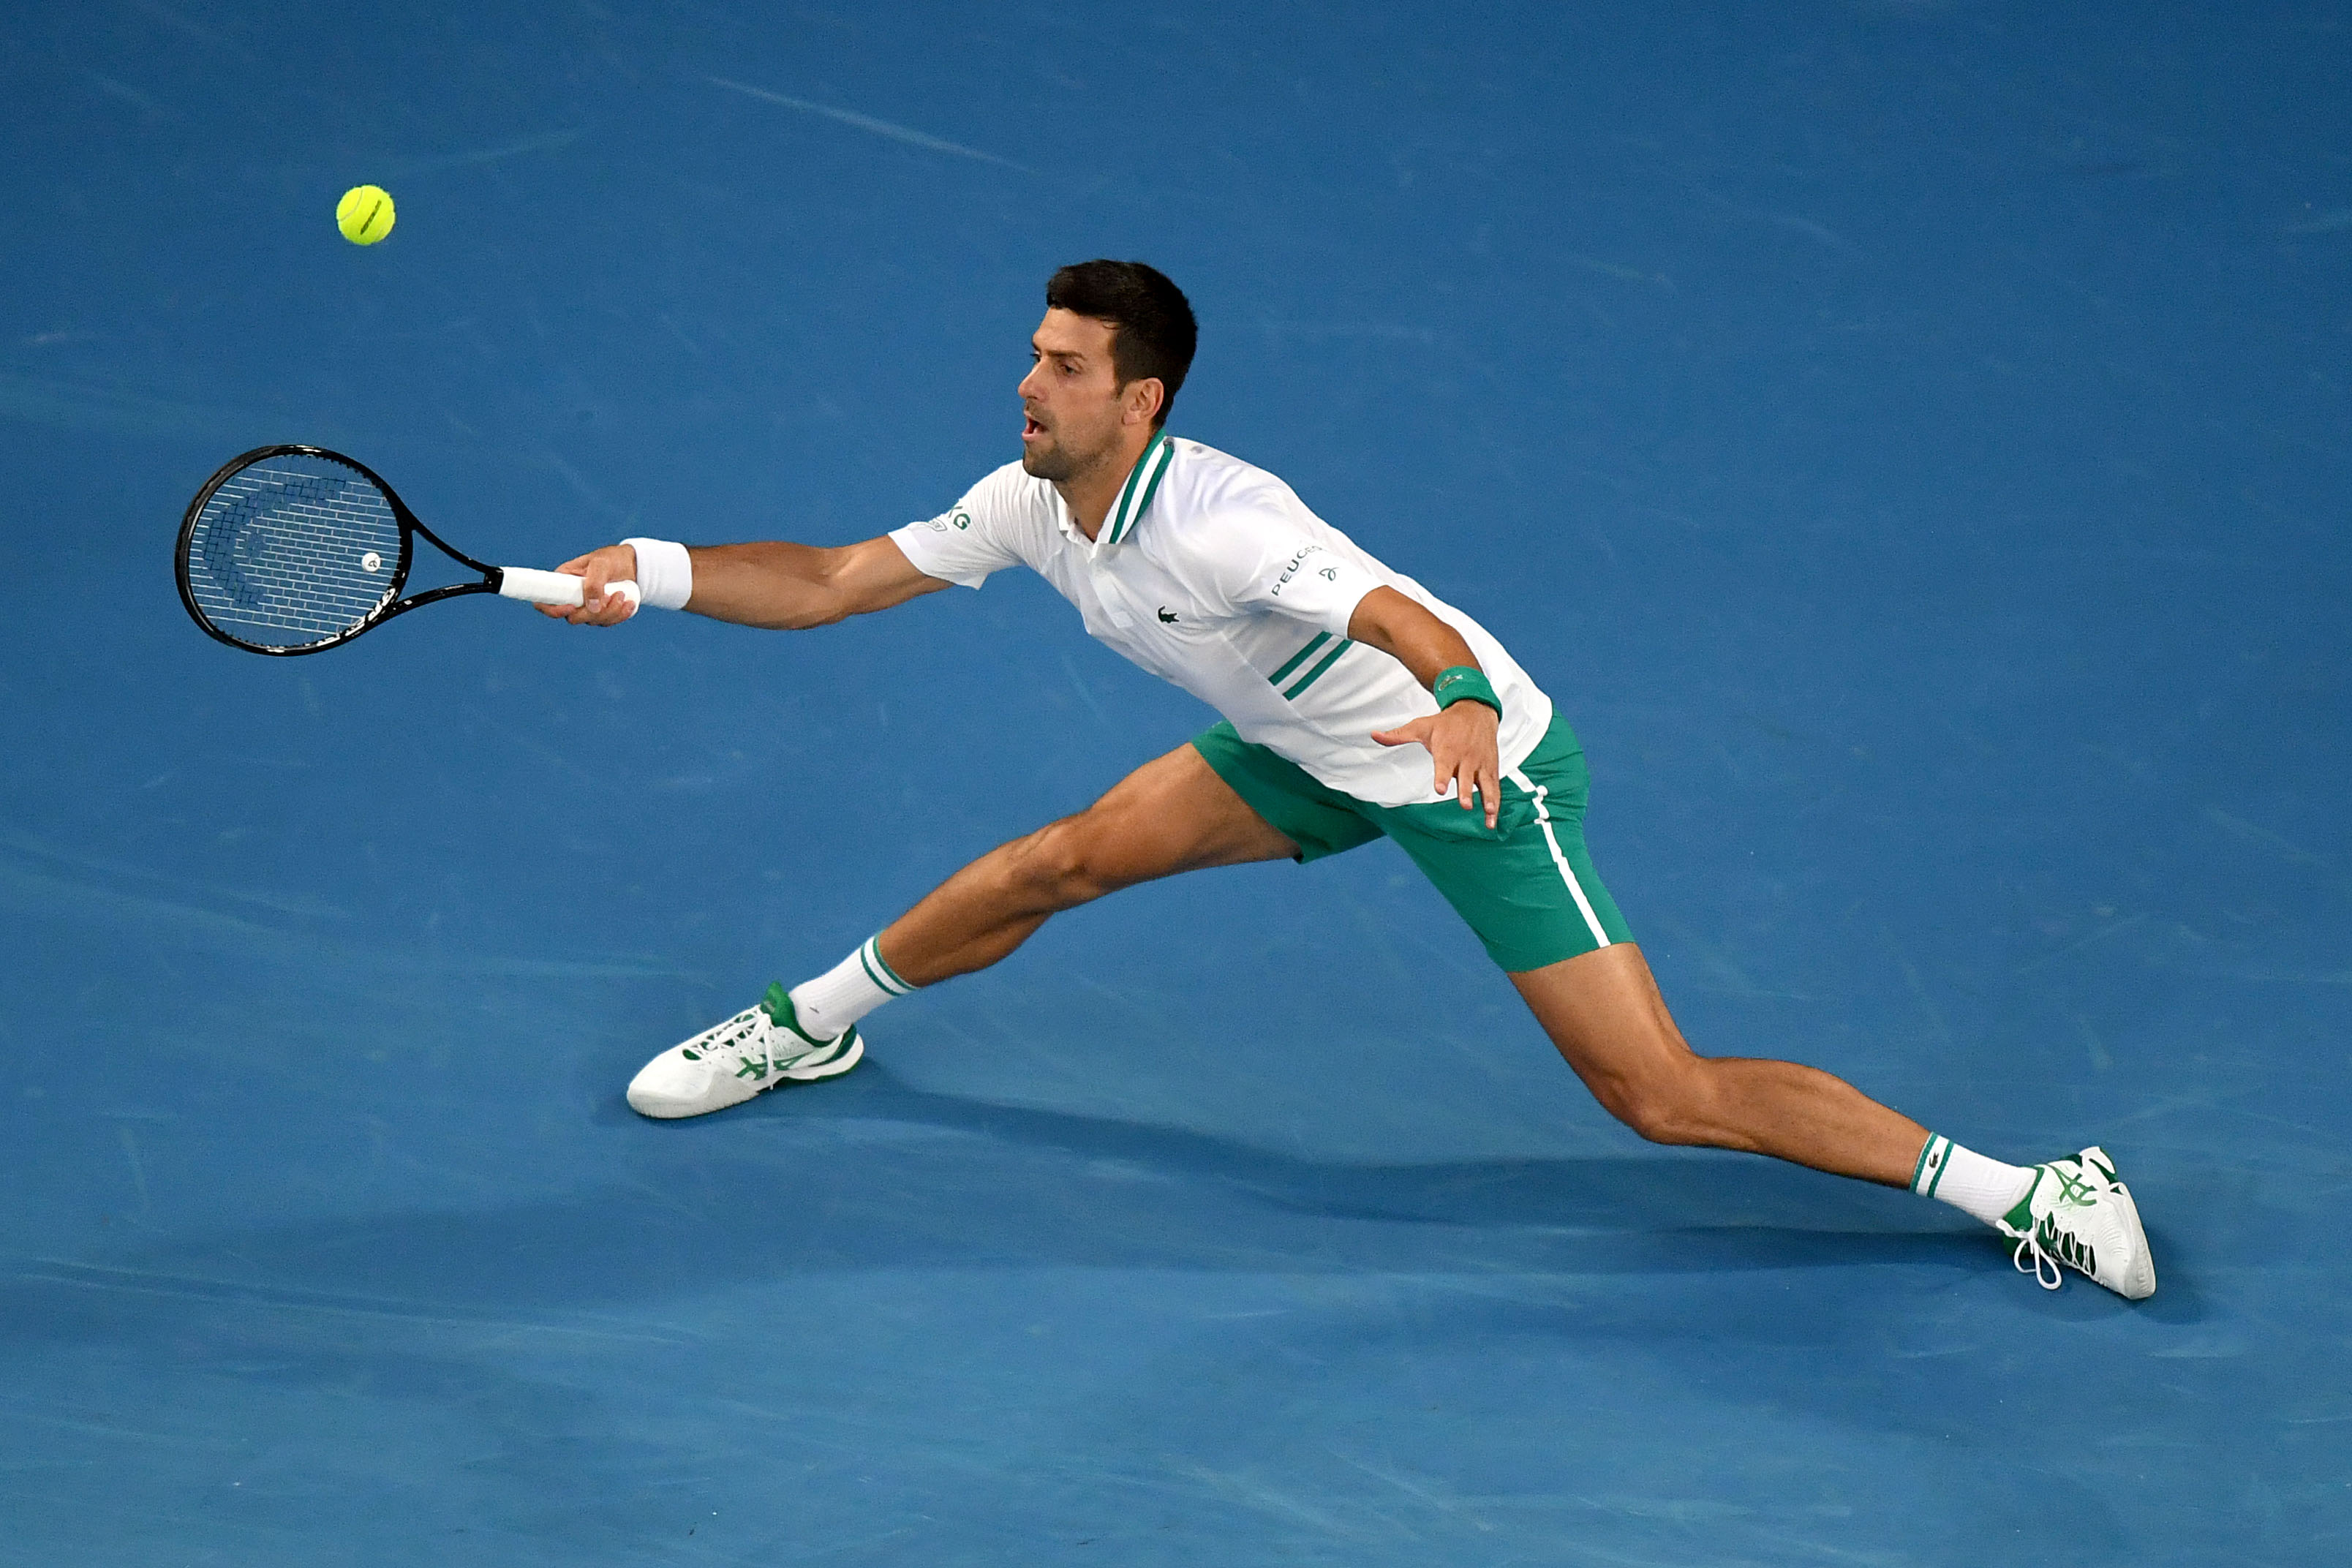 At Australian Open, Djokovic chases 18th Slam, Medvedev 1st